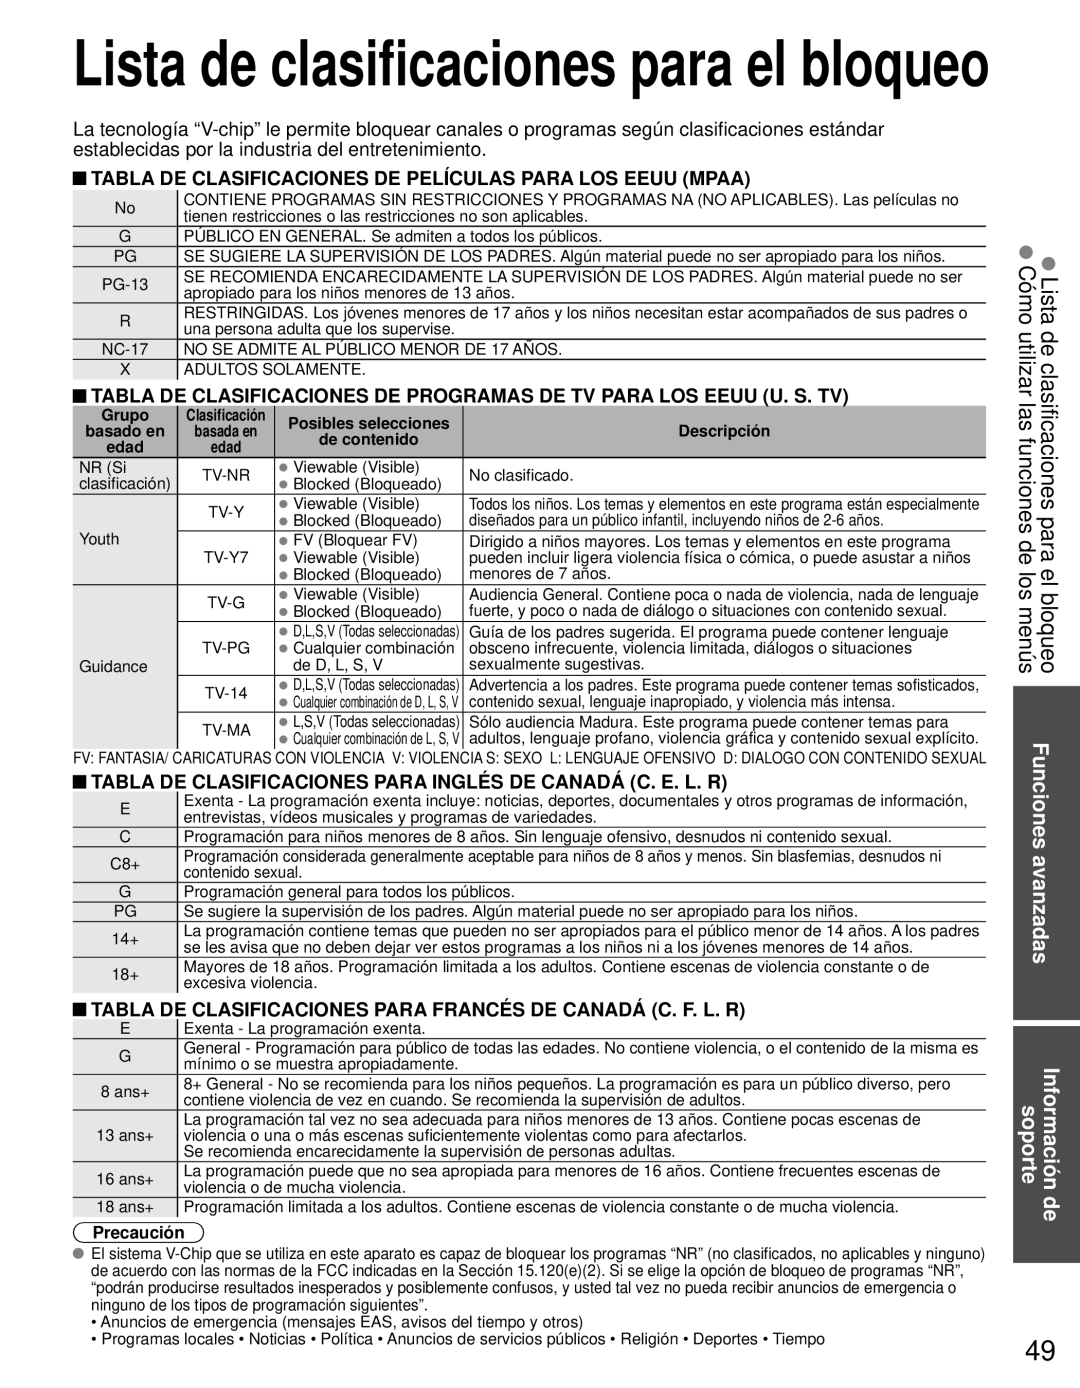 Panasonic TC-L42E3 owner manual Lista de clasificaciones para el bloqueo, Información de soporte, Precaución 